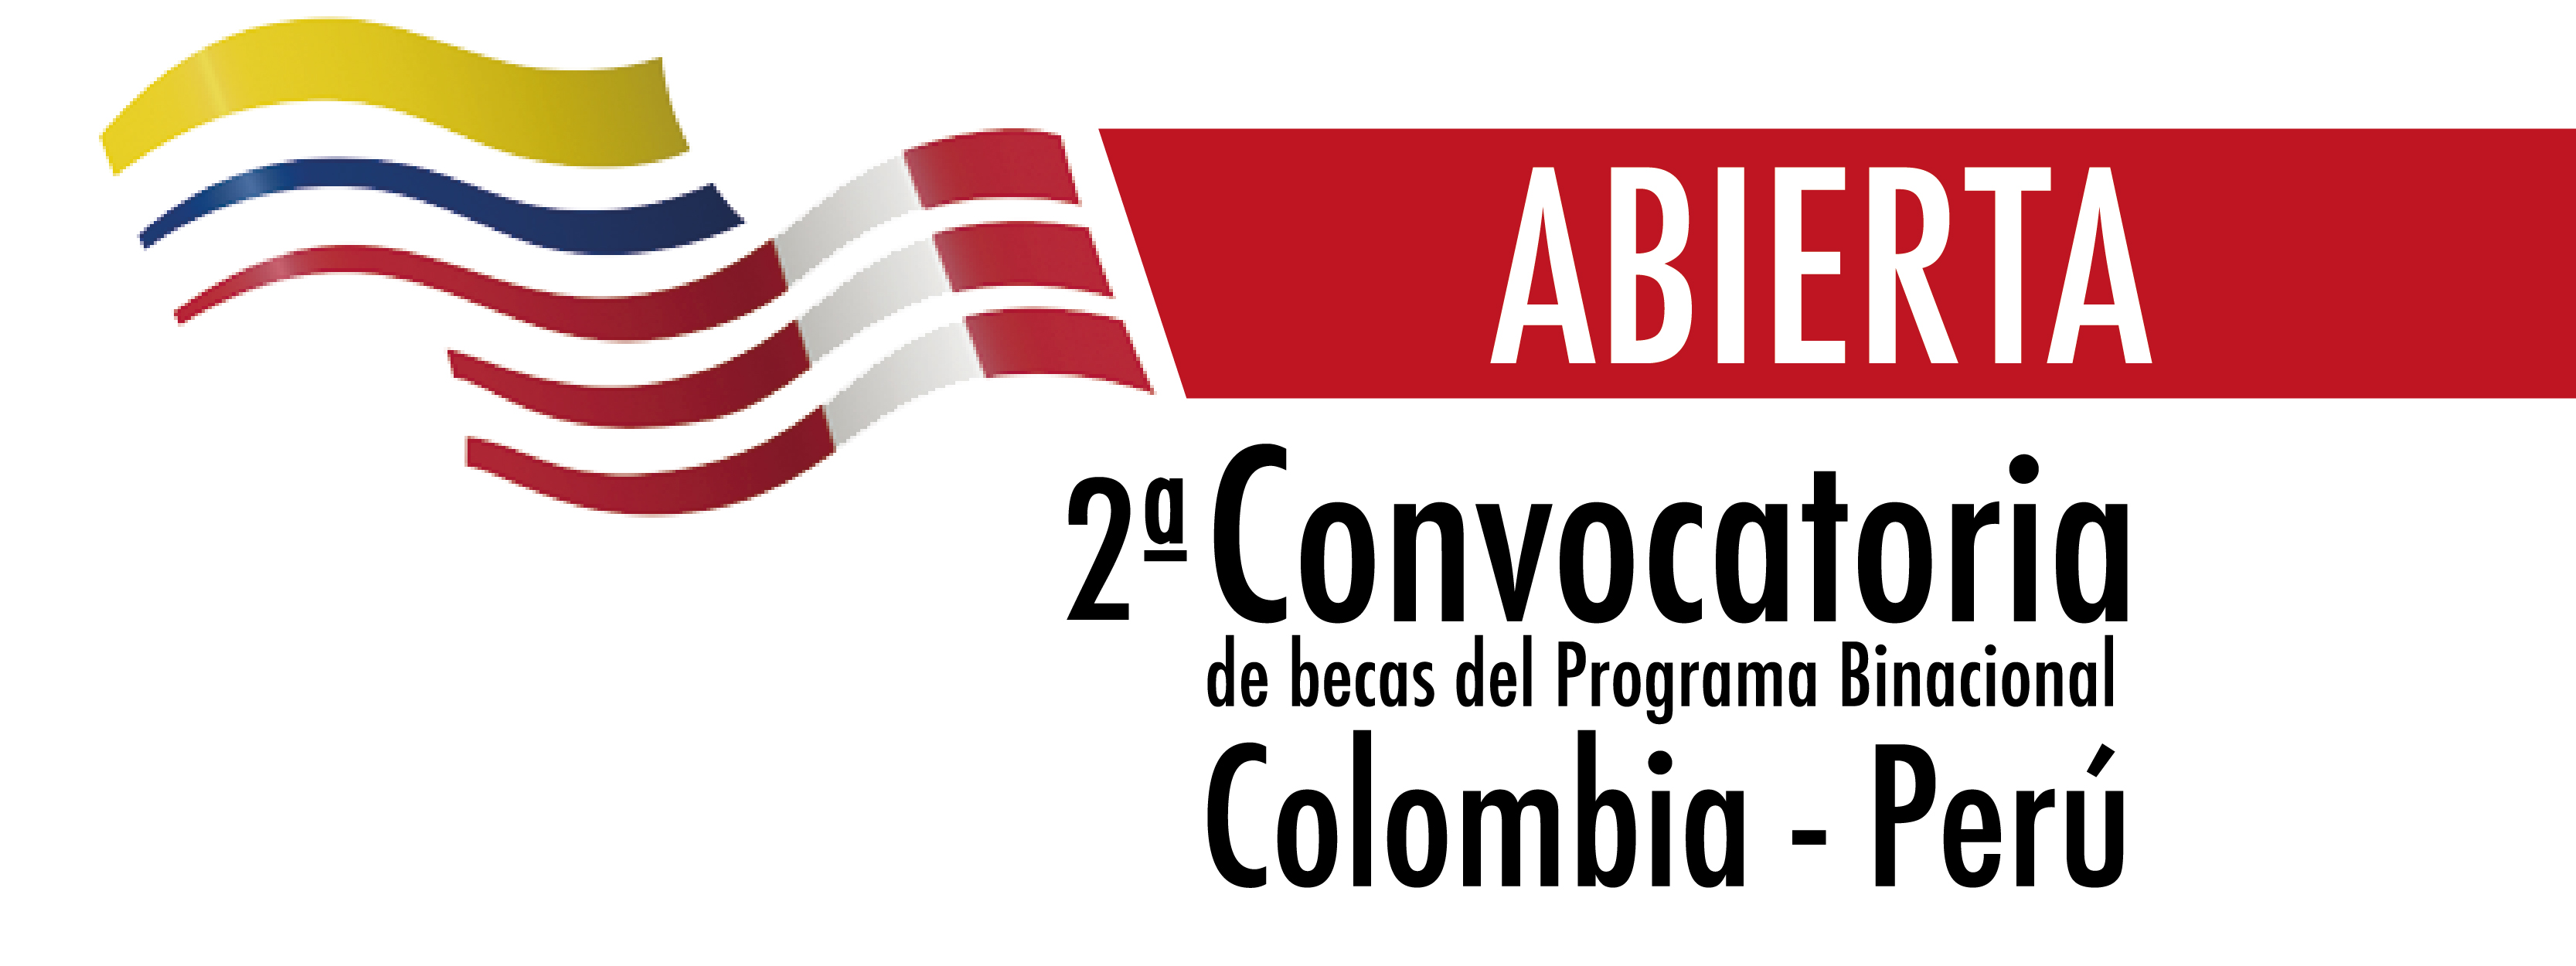 Abierta segunda convocatoria de becas entre Colombia - Perú